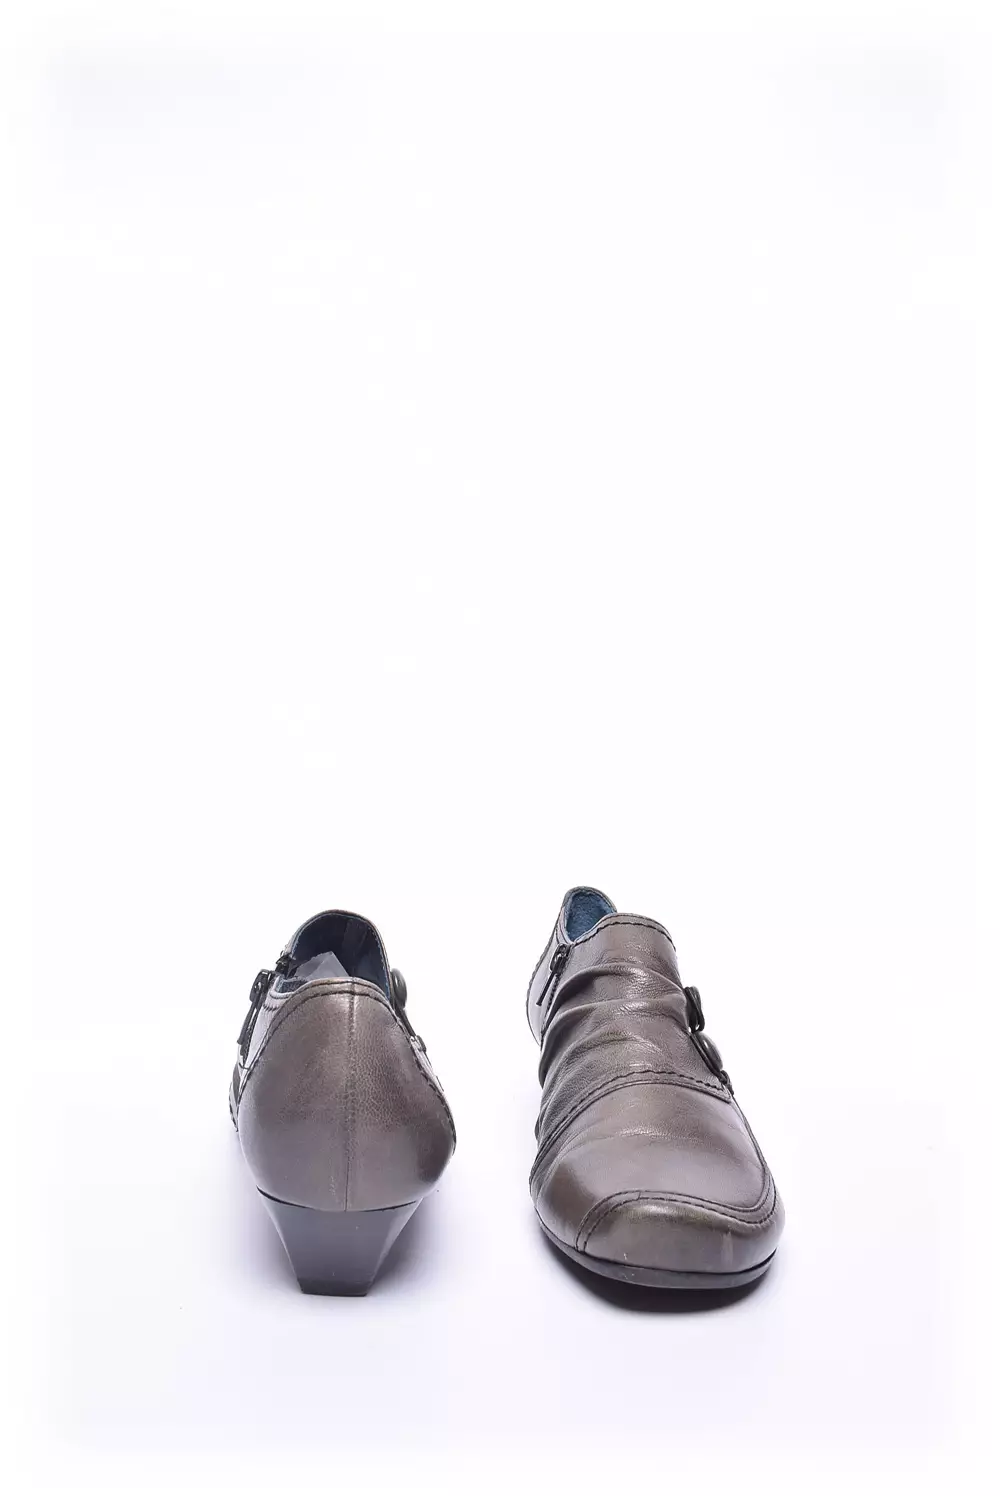 Pantofi dama  [3]